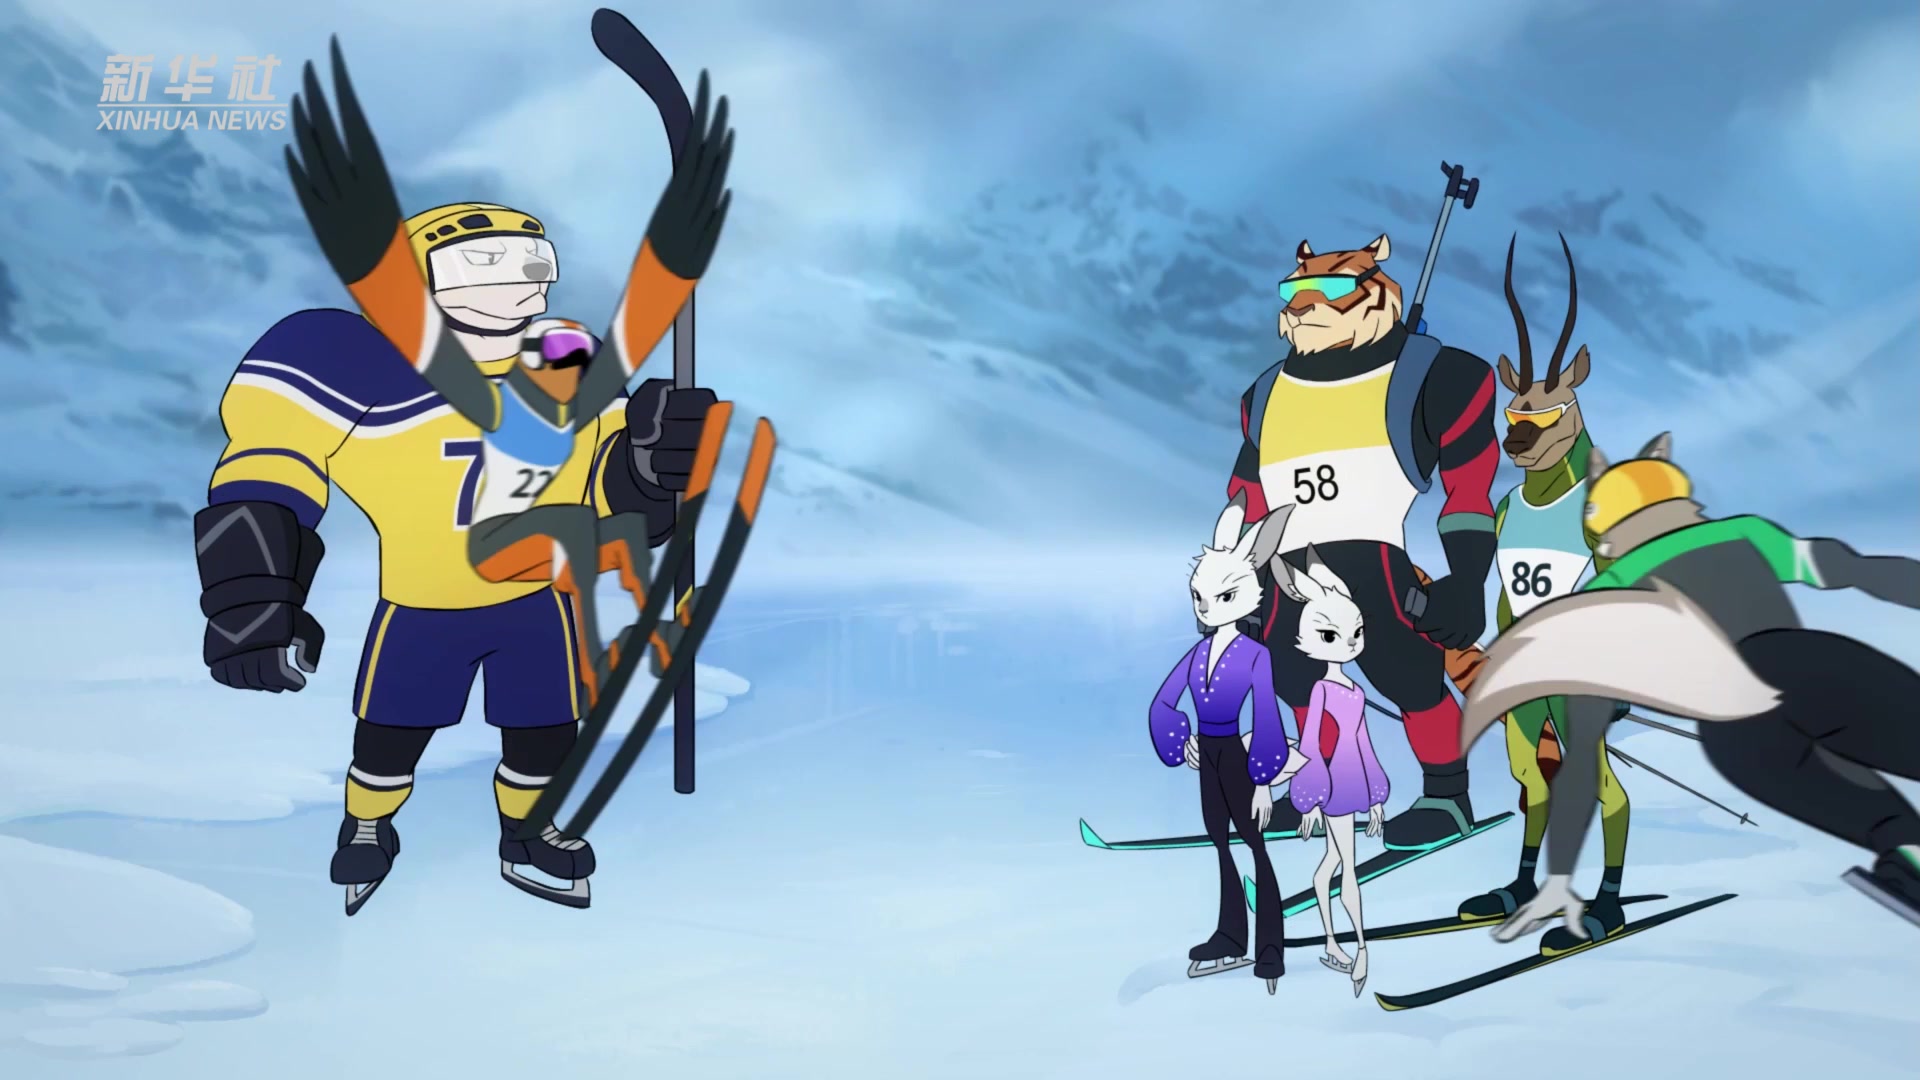 动漫《冰雪之约》第六集:花样滑冰